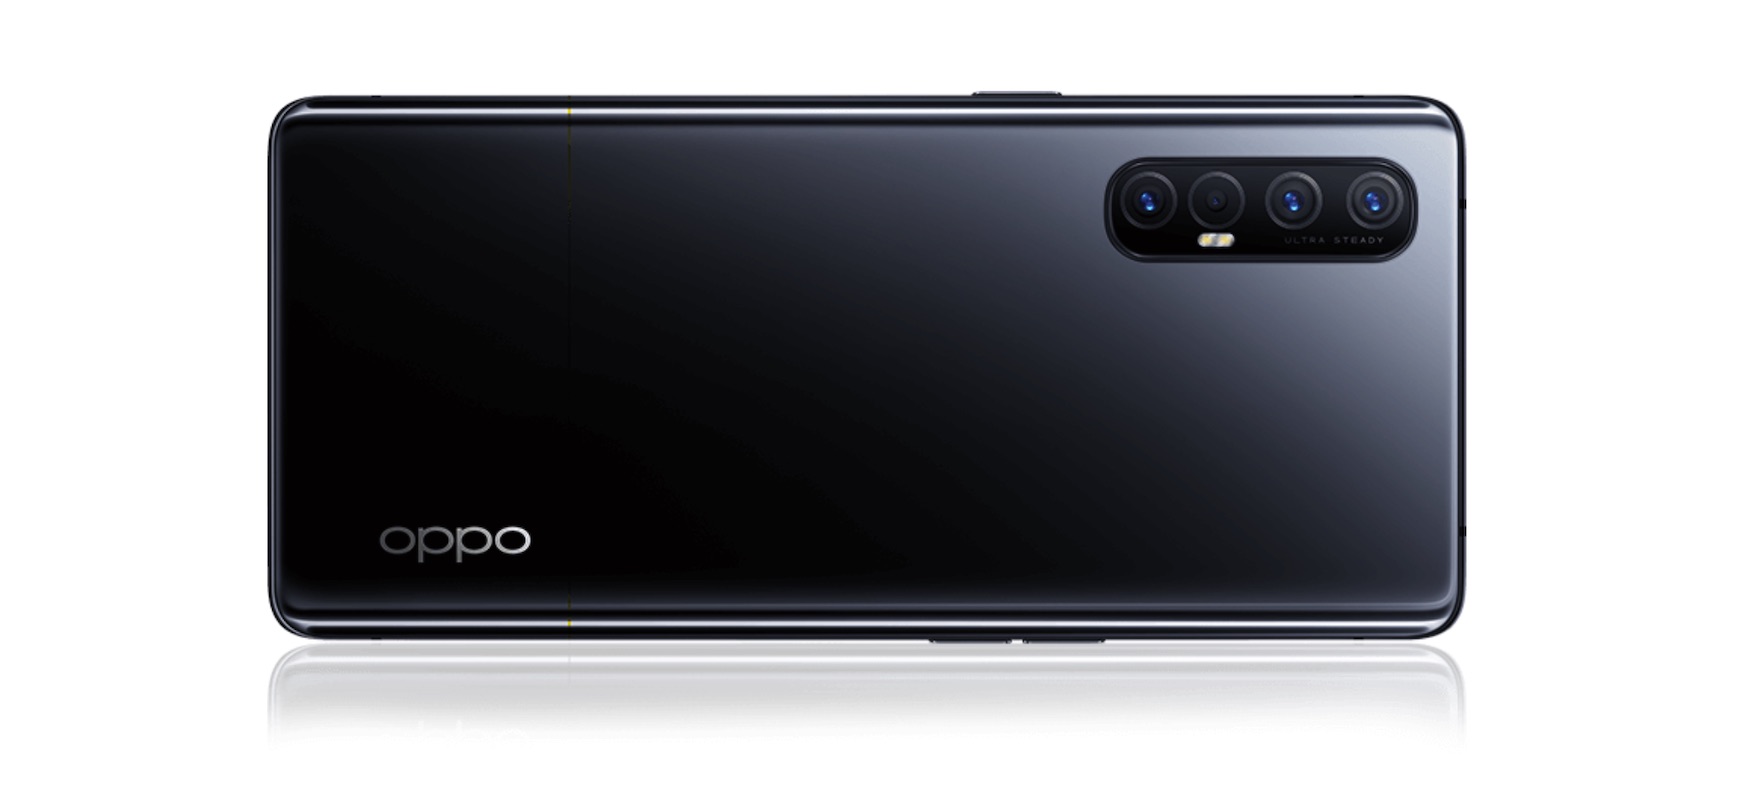 Полный обзор смартфона Oppo Reno3: достоинства, недостатки, стоимость, параметры - технические характеристики, отзывы, цена | Оппо